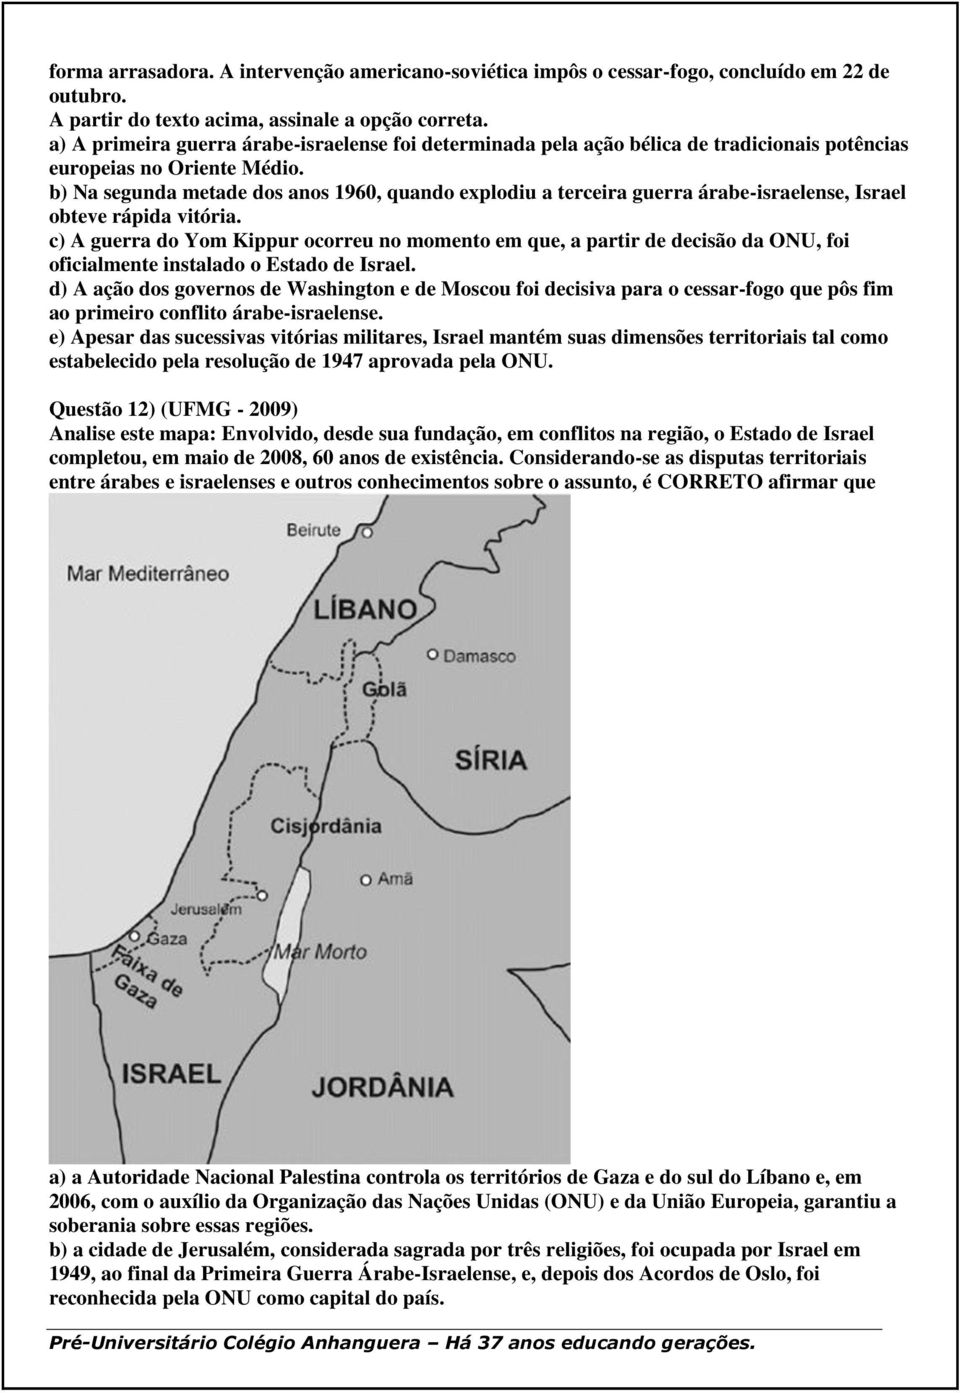 b) Na segunda metade dos anos 1960, quando explodiu a terceira guerra árabe-israelense, Israel obteve rápida vitória.